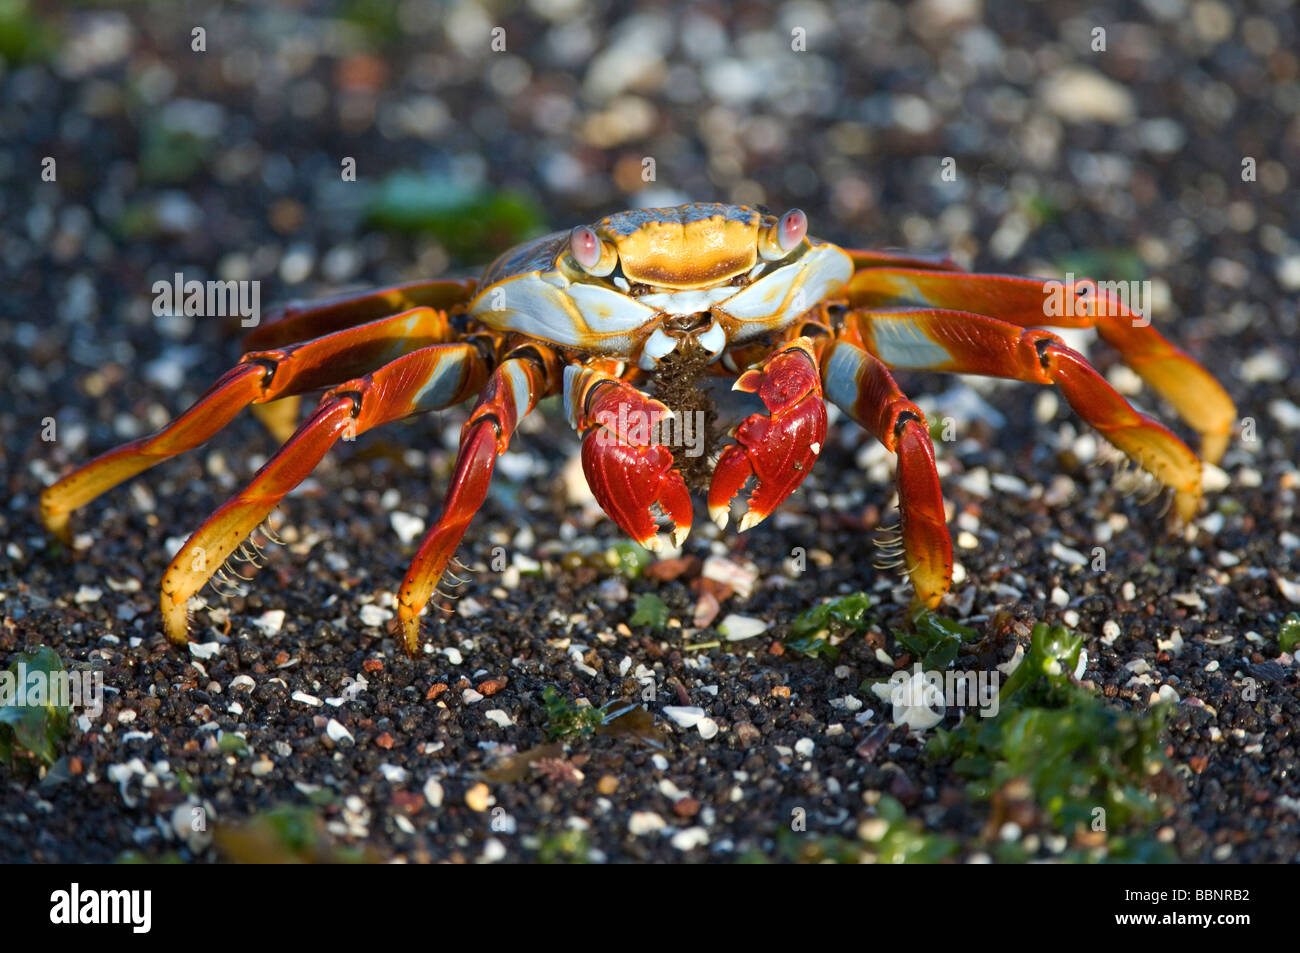 Sally Lightfoot Crab (Grapsus grapsus) manger des algues, Punta Tortuga Negra Isabela Equateur Galapagos Océan Pacifique Amérique du Sud Banque D'Images